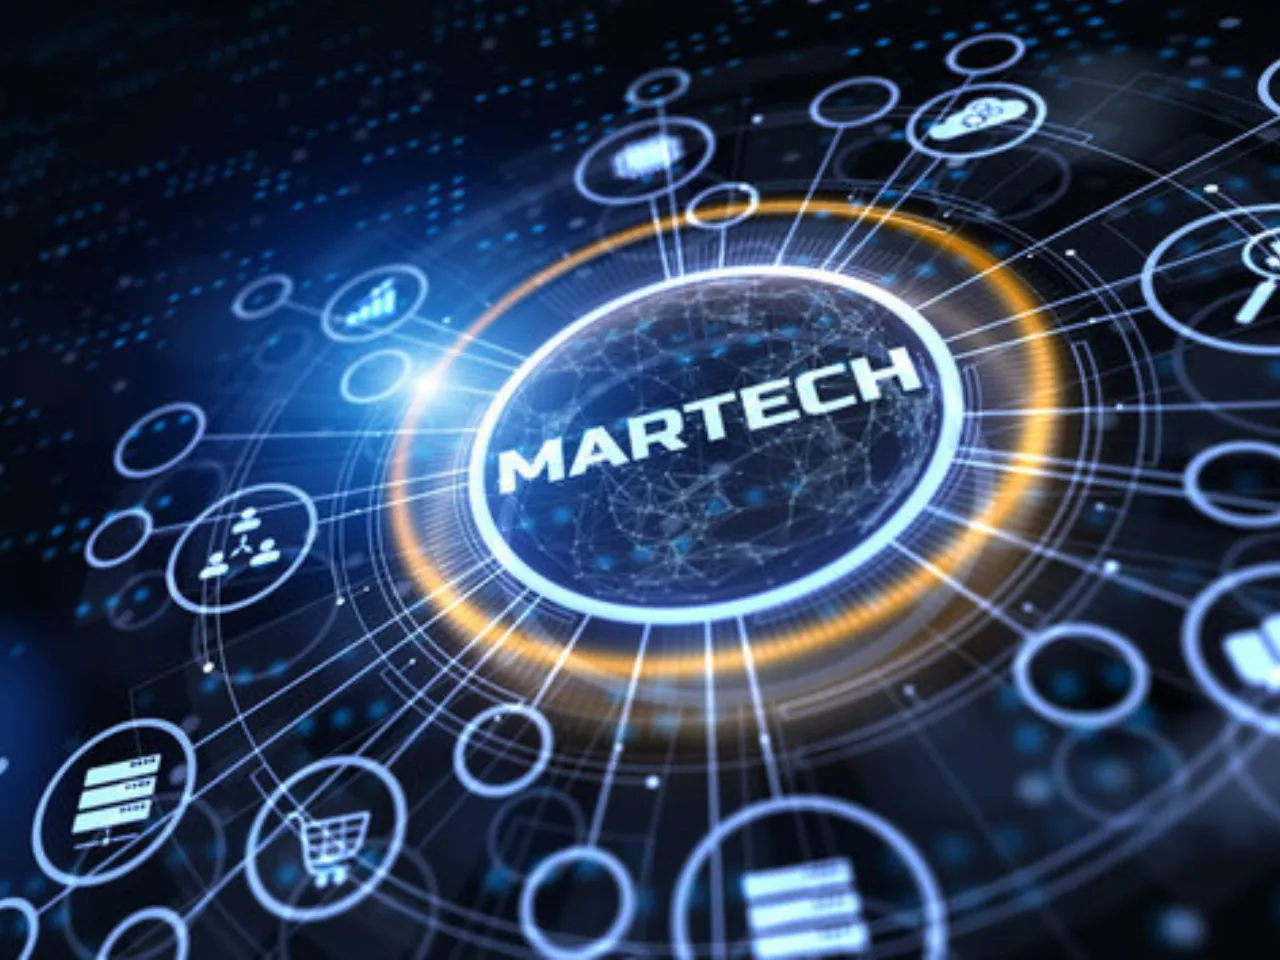 MarTech spending